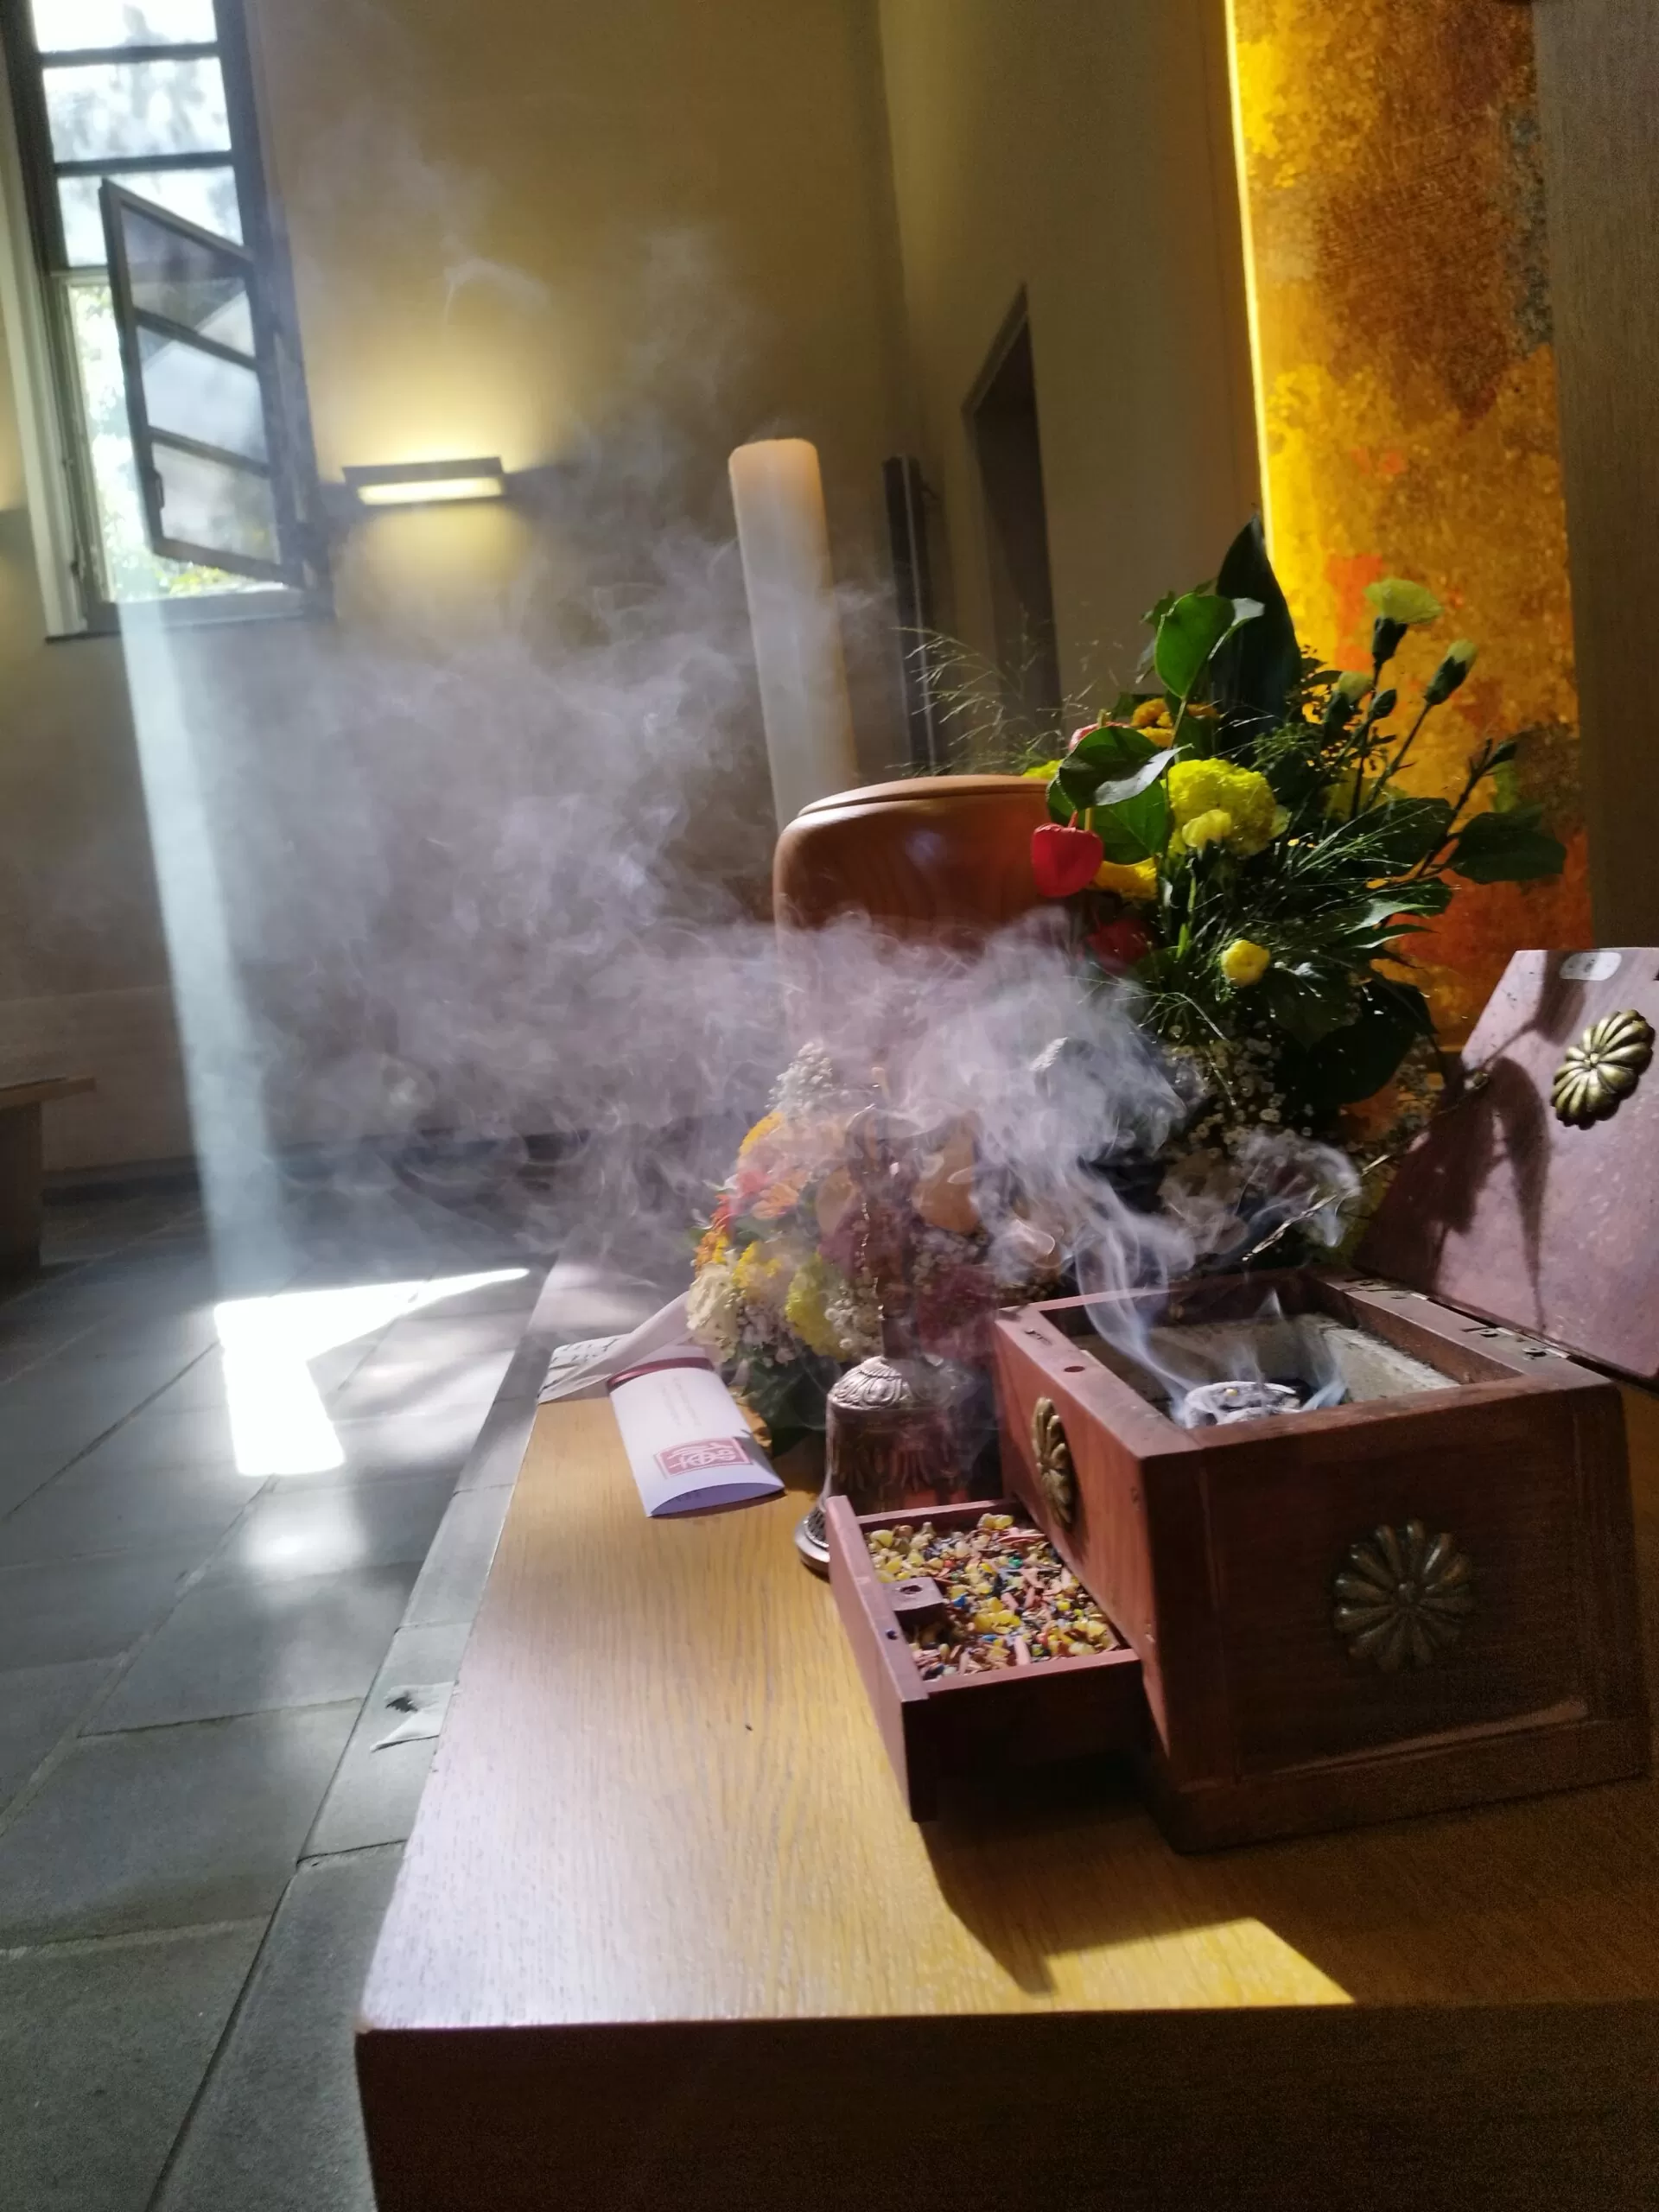 Buddhistische Bestattung in Zürich Fluntern mit Abt Reding als Trauerredner